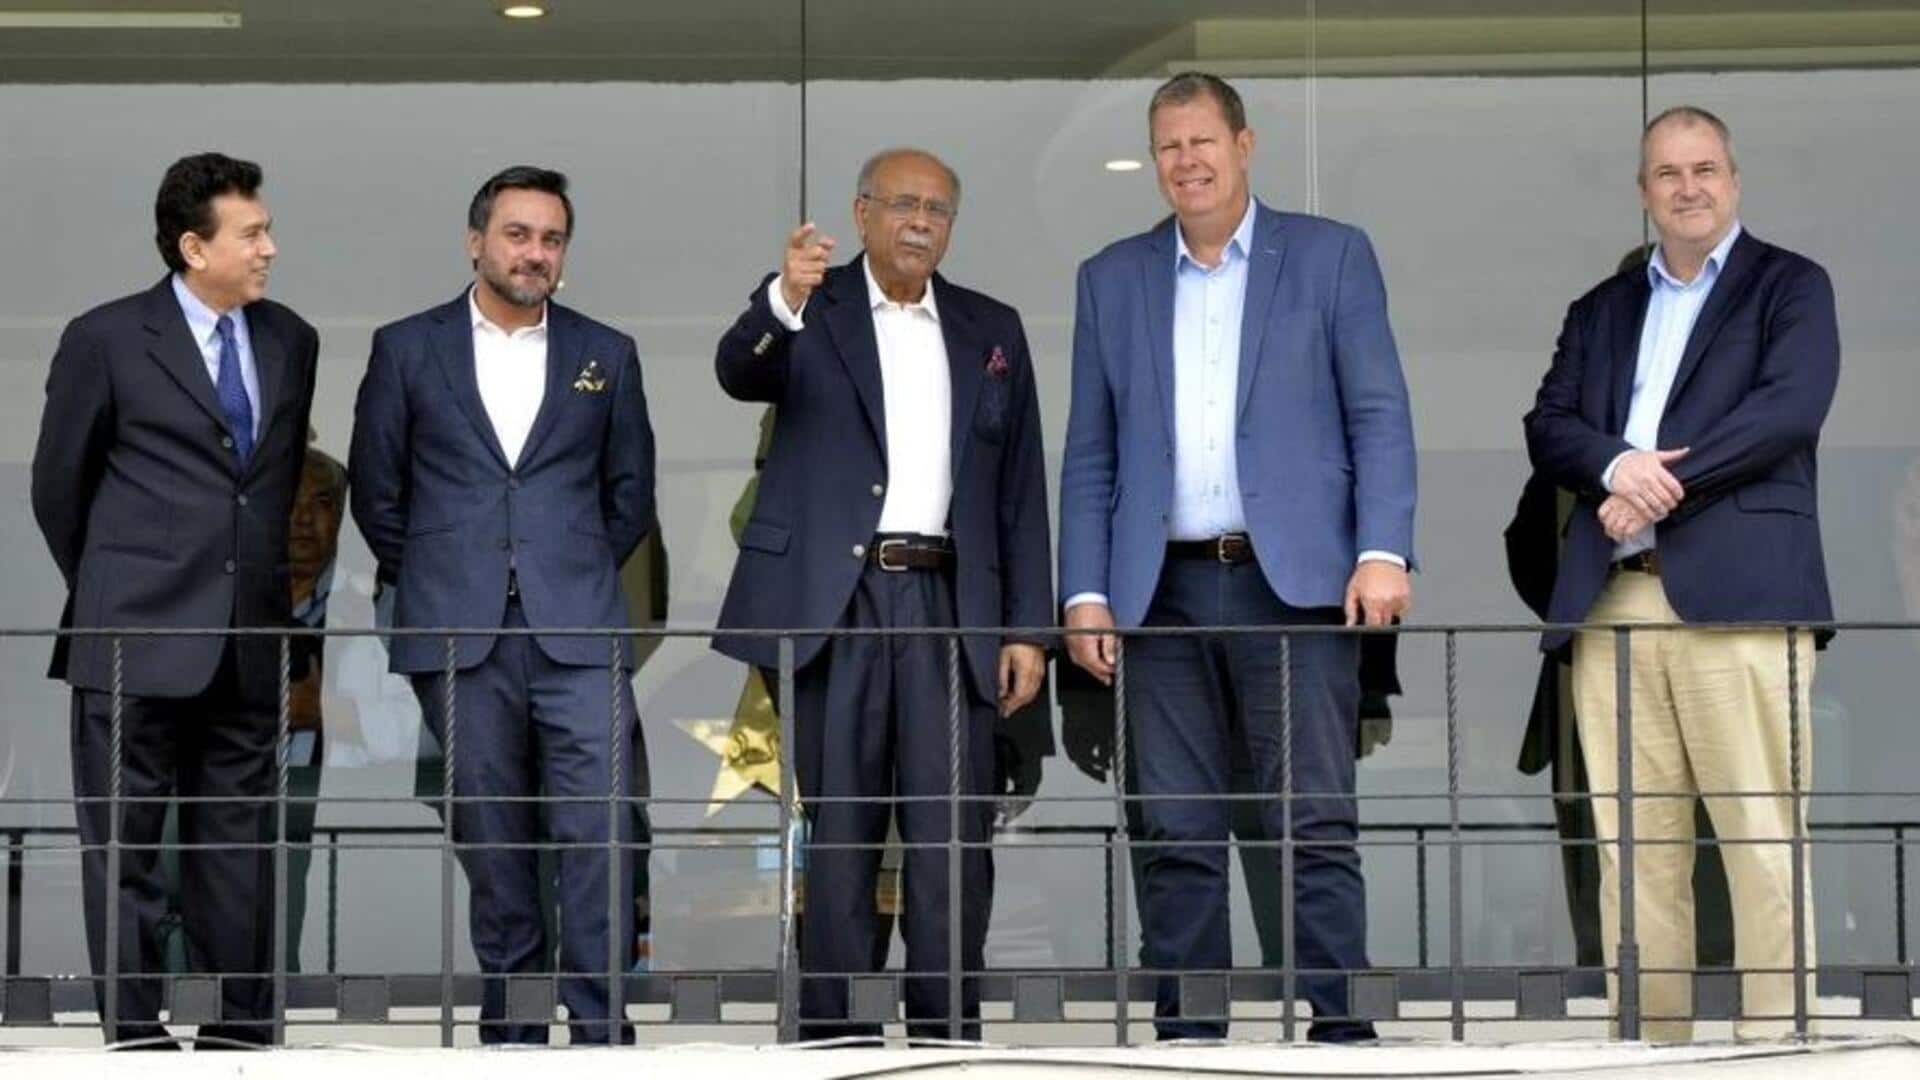 ICC अध्यक्ष ग्रेग बार्कले ने किया पाकिस्तान का दौरा, कहा- देश में अच्छी हैं क्रिकेट सुविधाएं